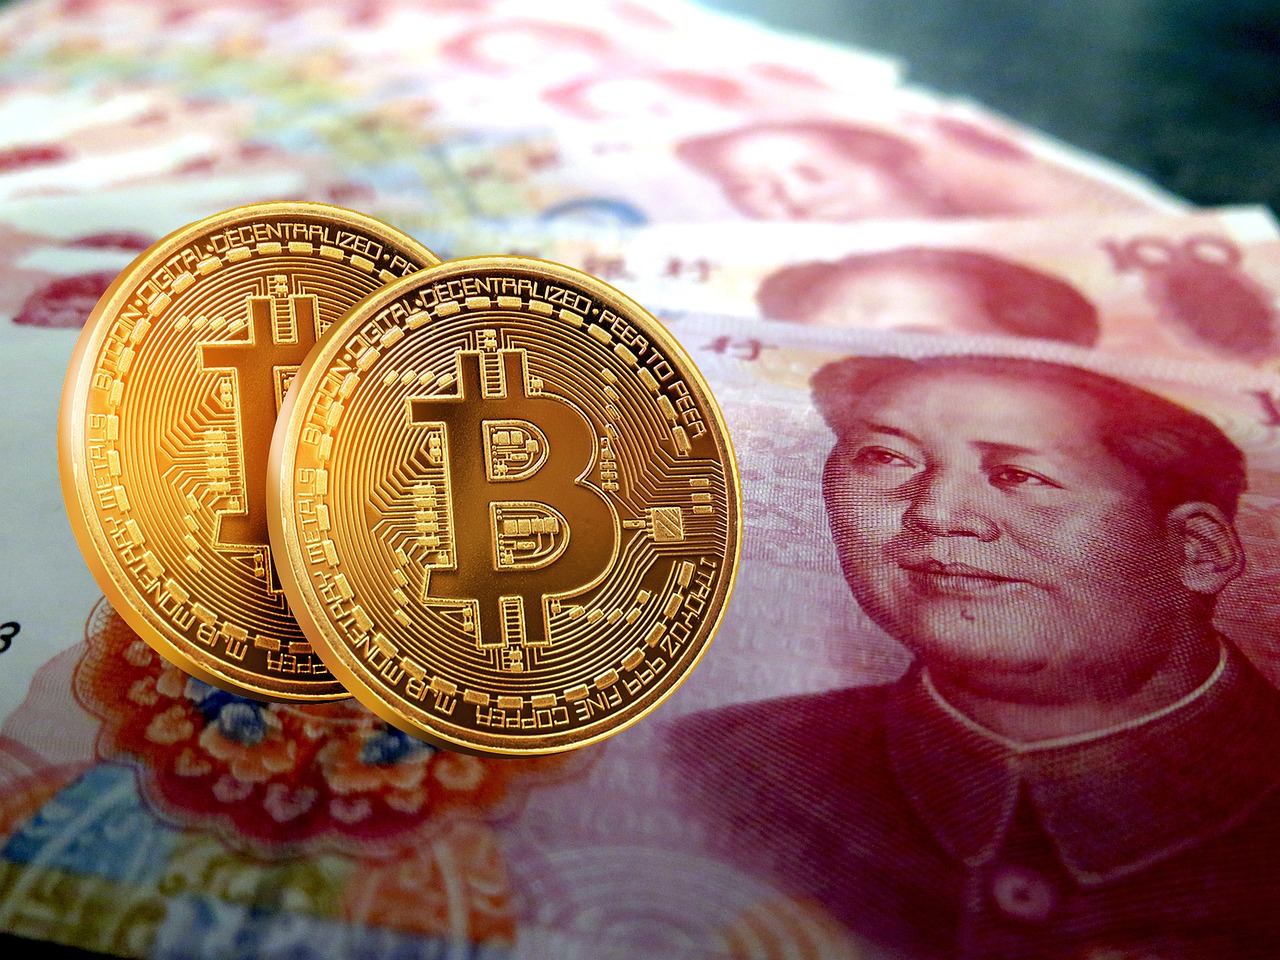 Китайские инвесторы покупают криптовалюты на миллионы в день, несмотря на запрет: причины